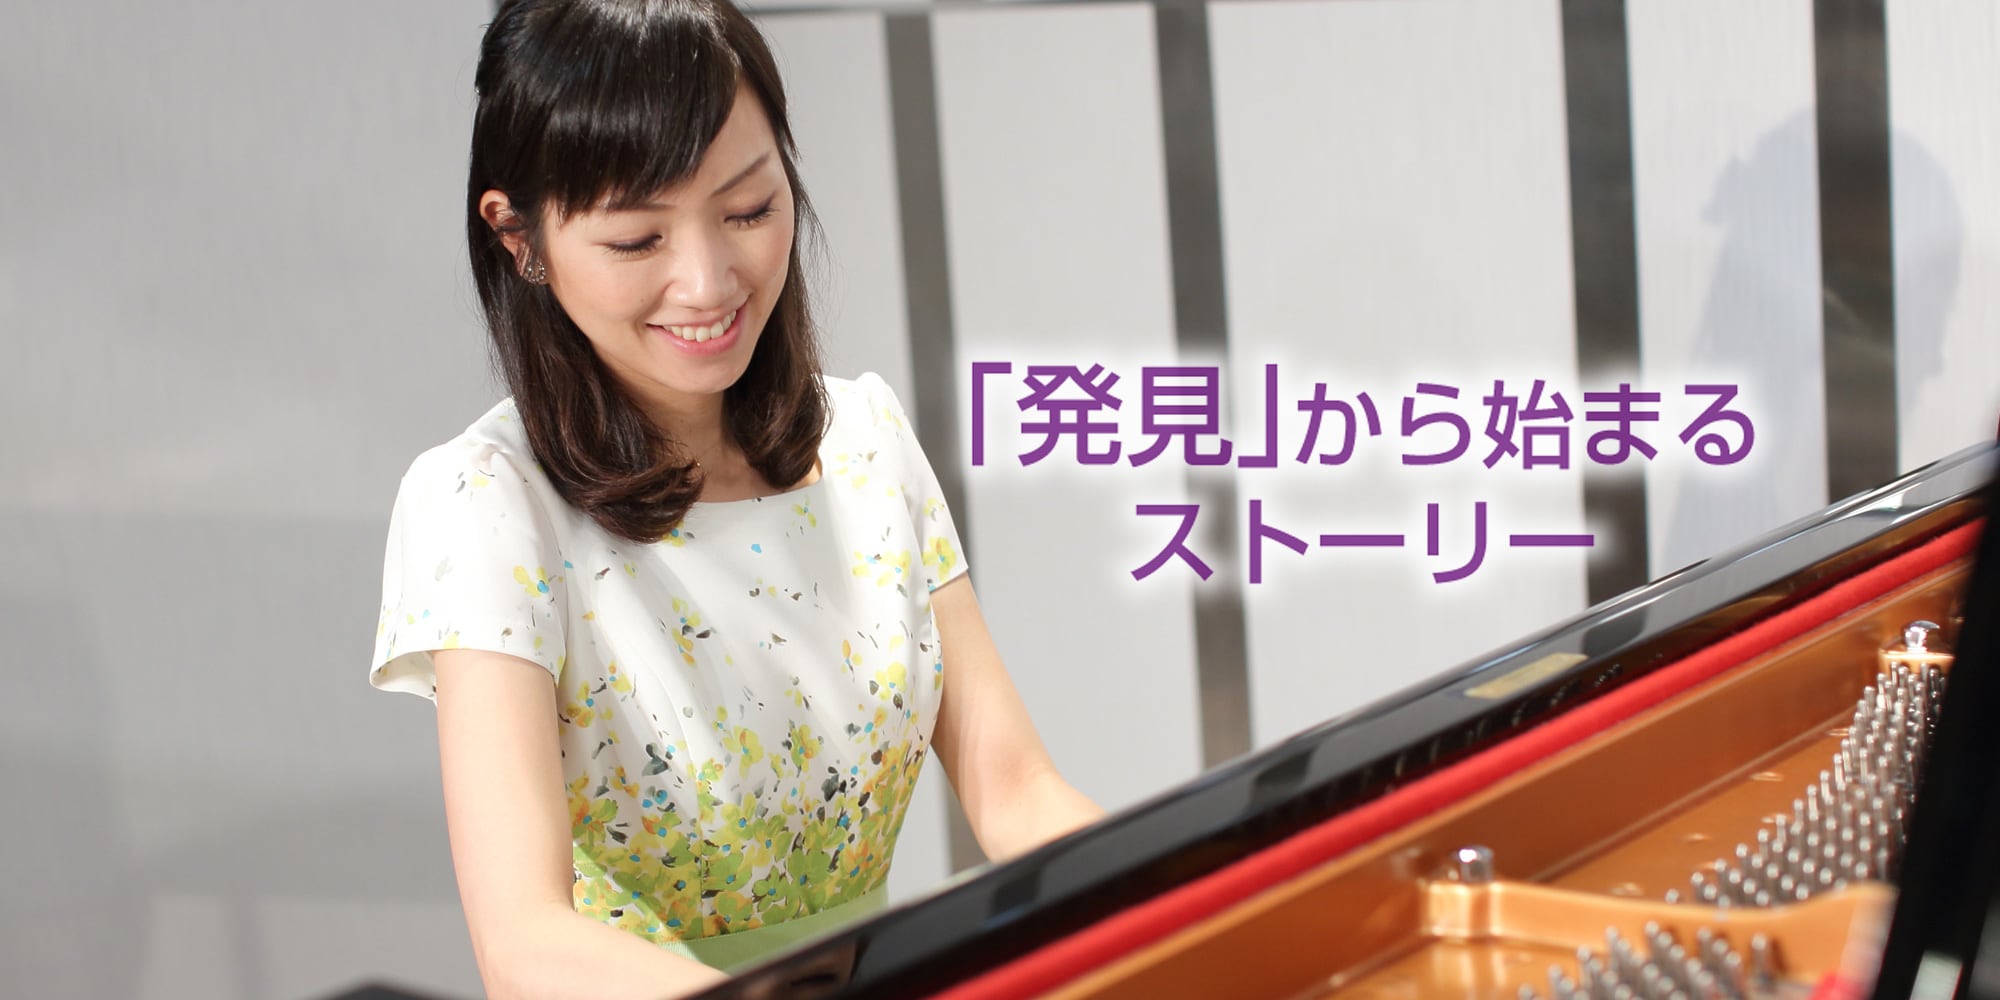 『発見から始まるストーリー』ヤマハミュージックジャパン デモンストレーター採用サイト グランドピアノを笑顔で弾くピアノデモンストレーターの写真